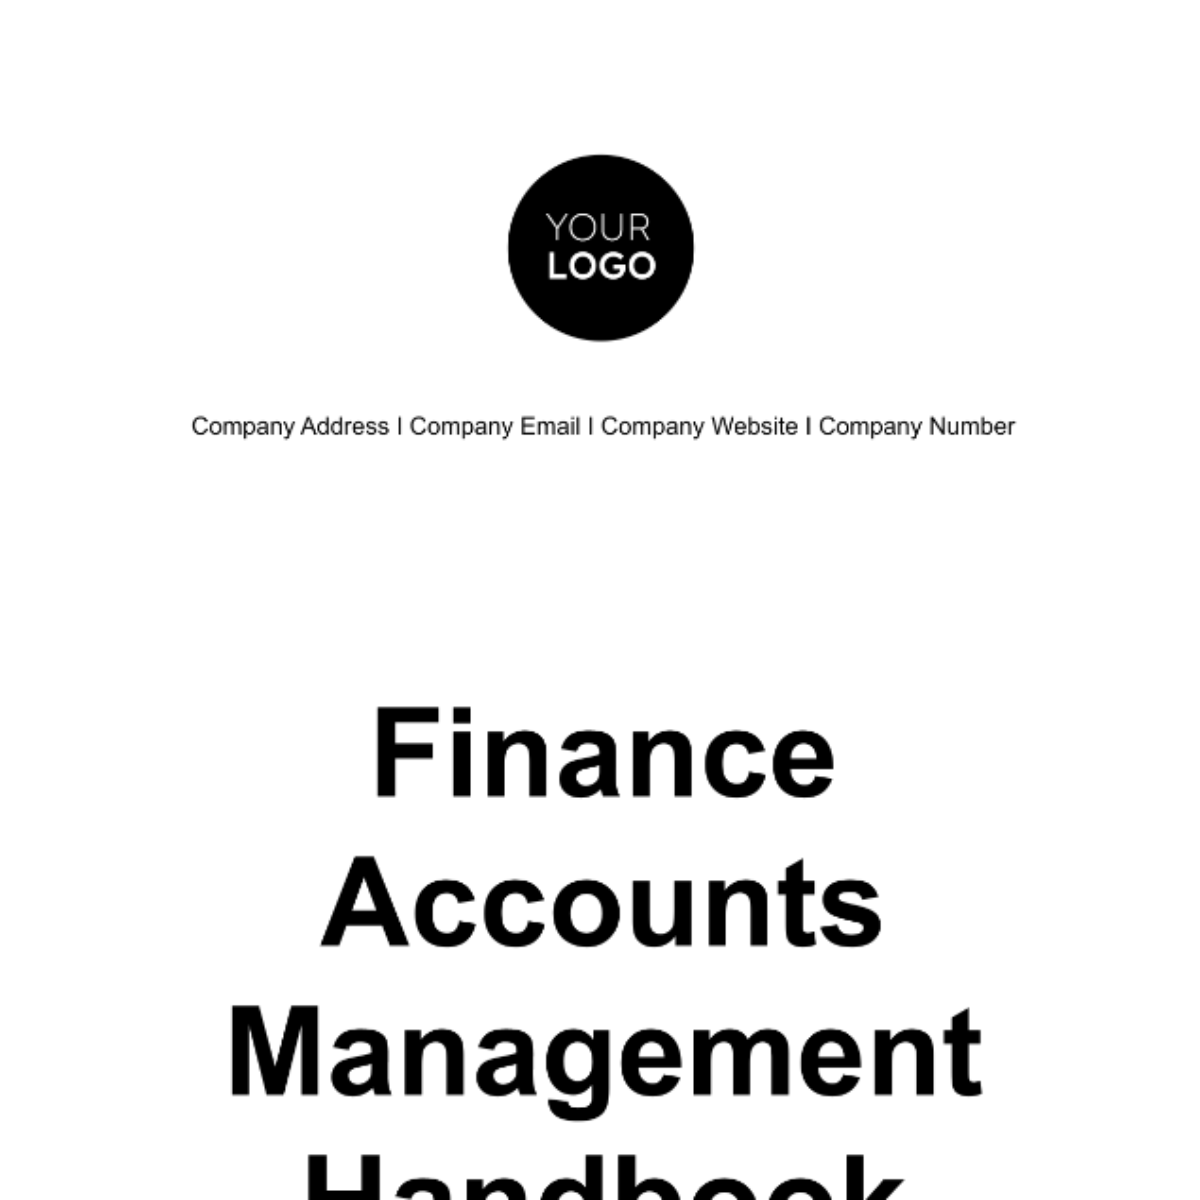 Finance Accounts Management Handbook Template